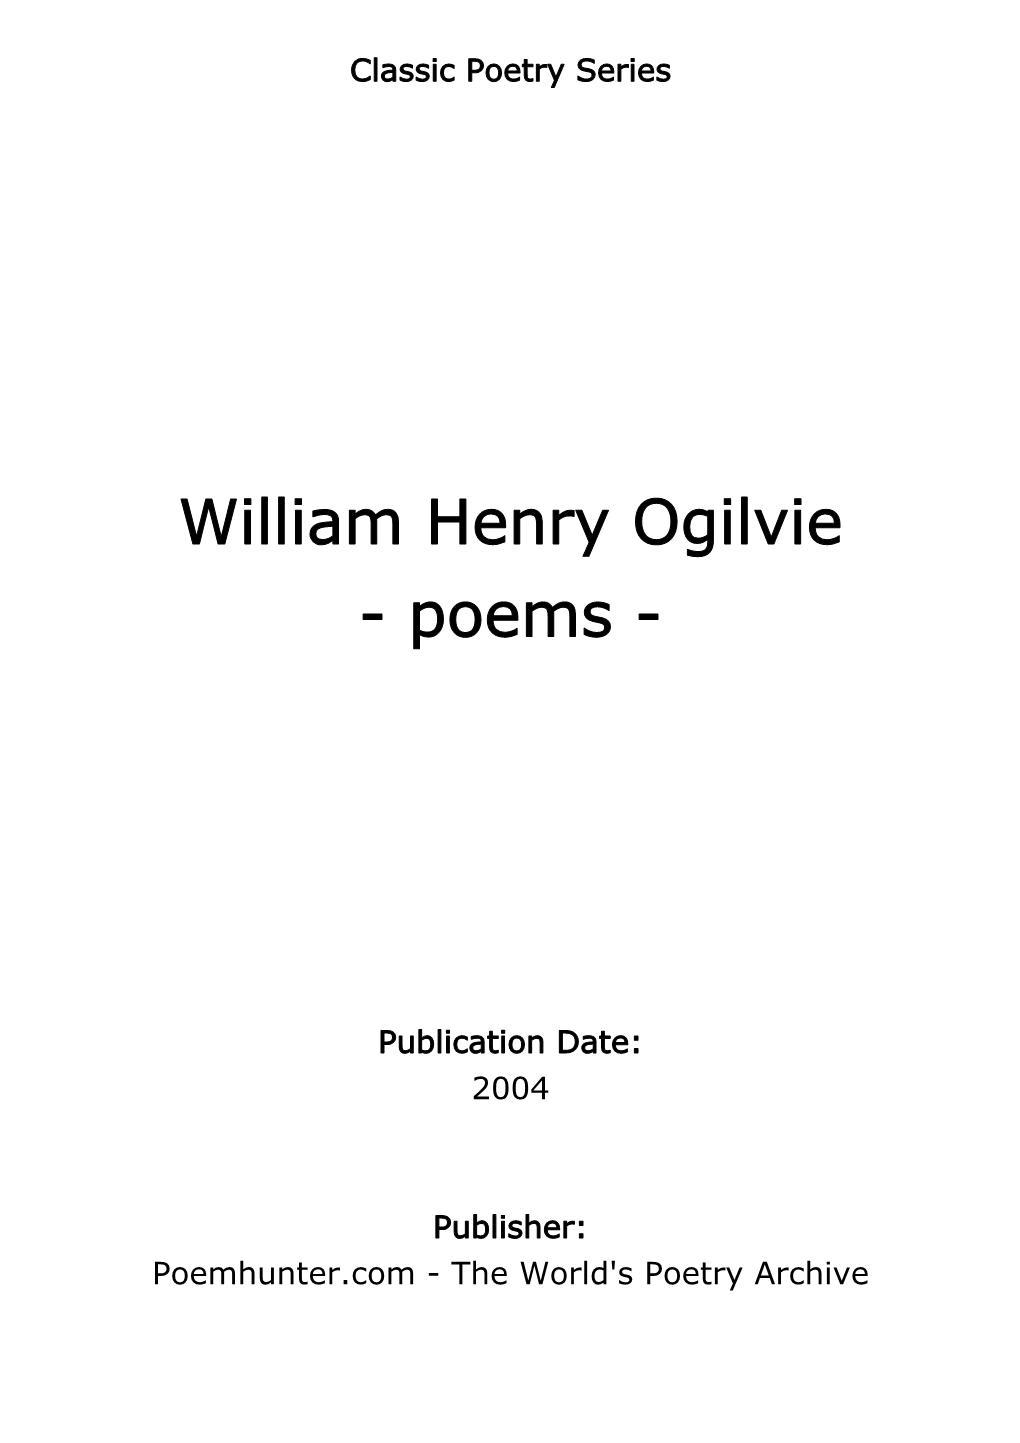 William Henry Ogilvie - Poems